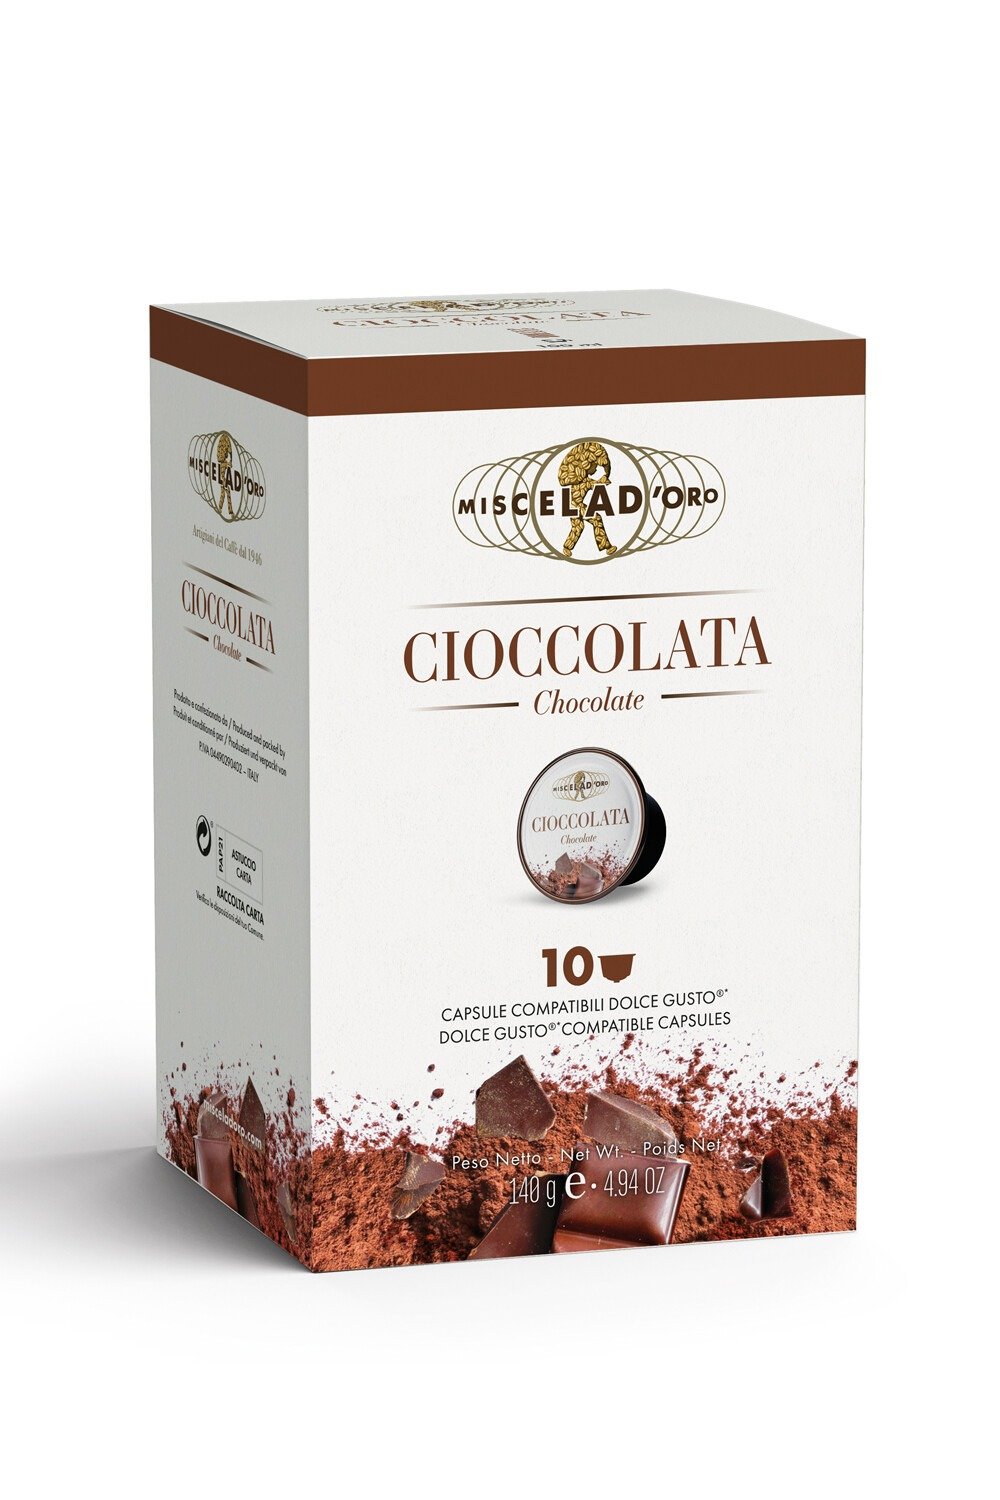 Miscela d'Oro Cioccolata - Dolce Gusto® Compatible Hot Chocolate